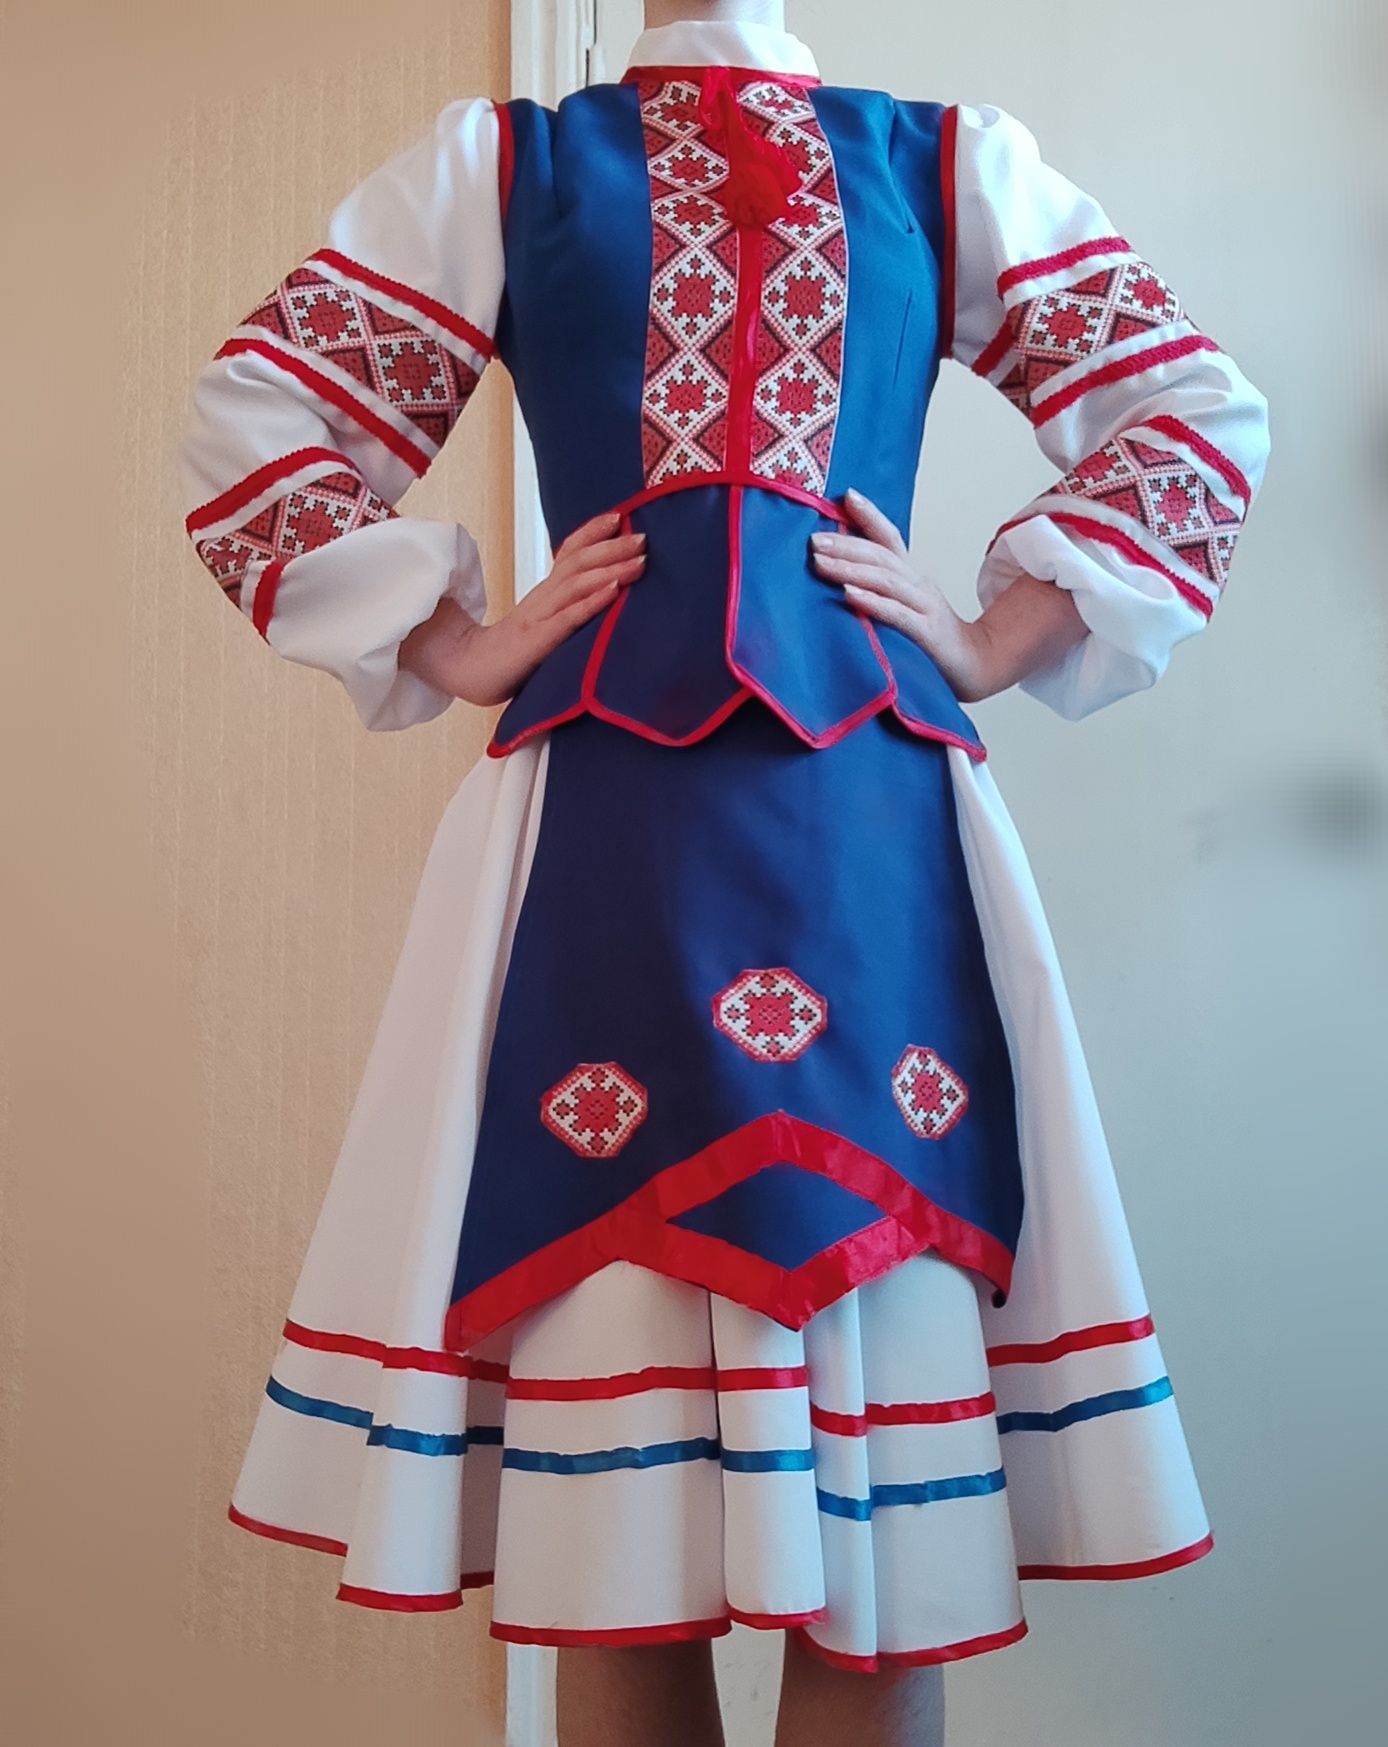 Український національний костюм. Вишиванка зі спідницею